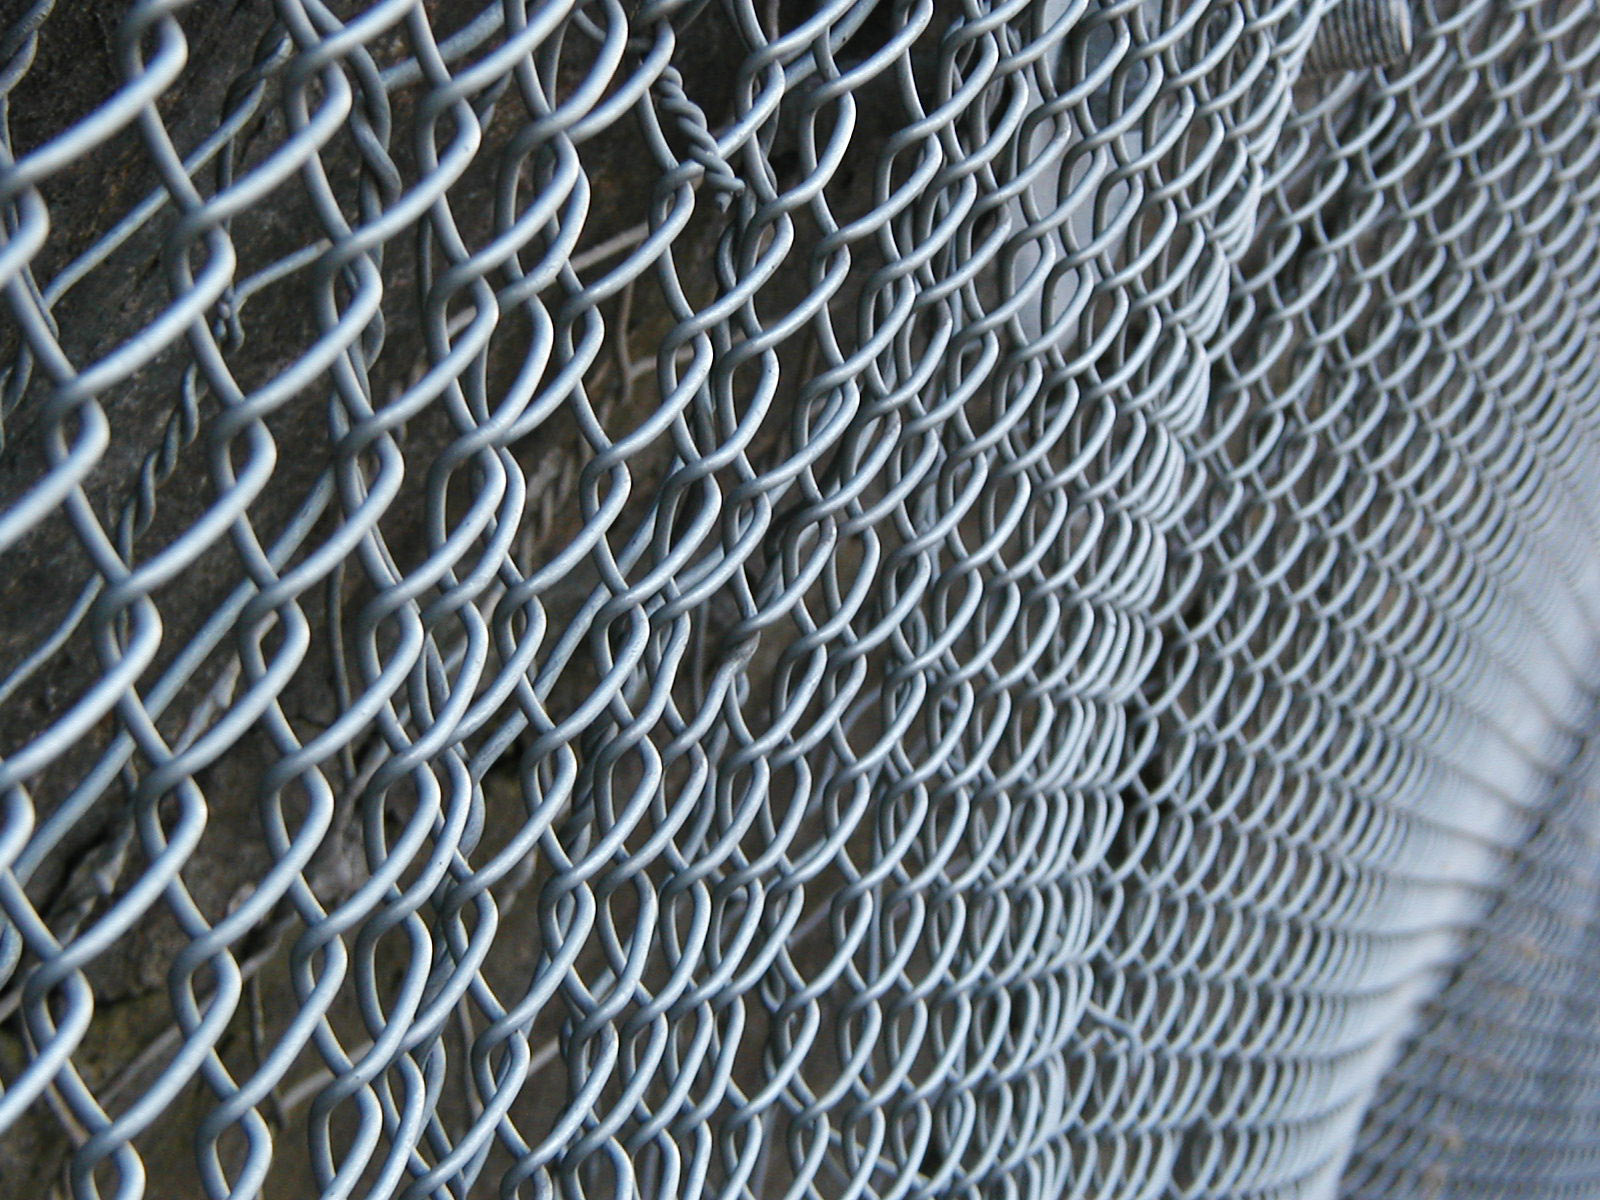 Steel fence grid photo